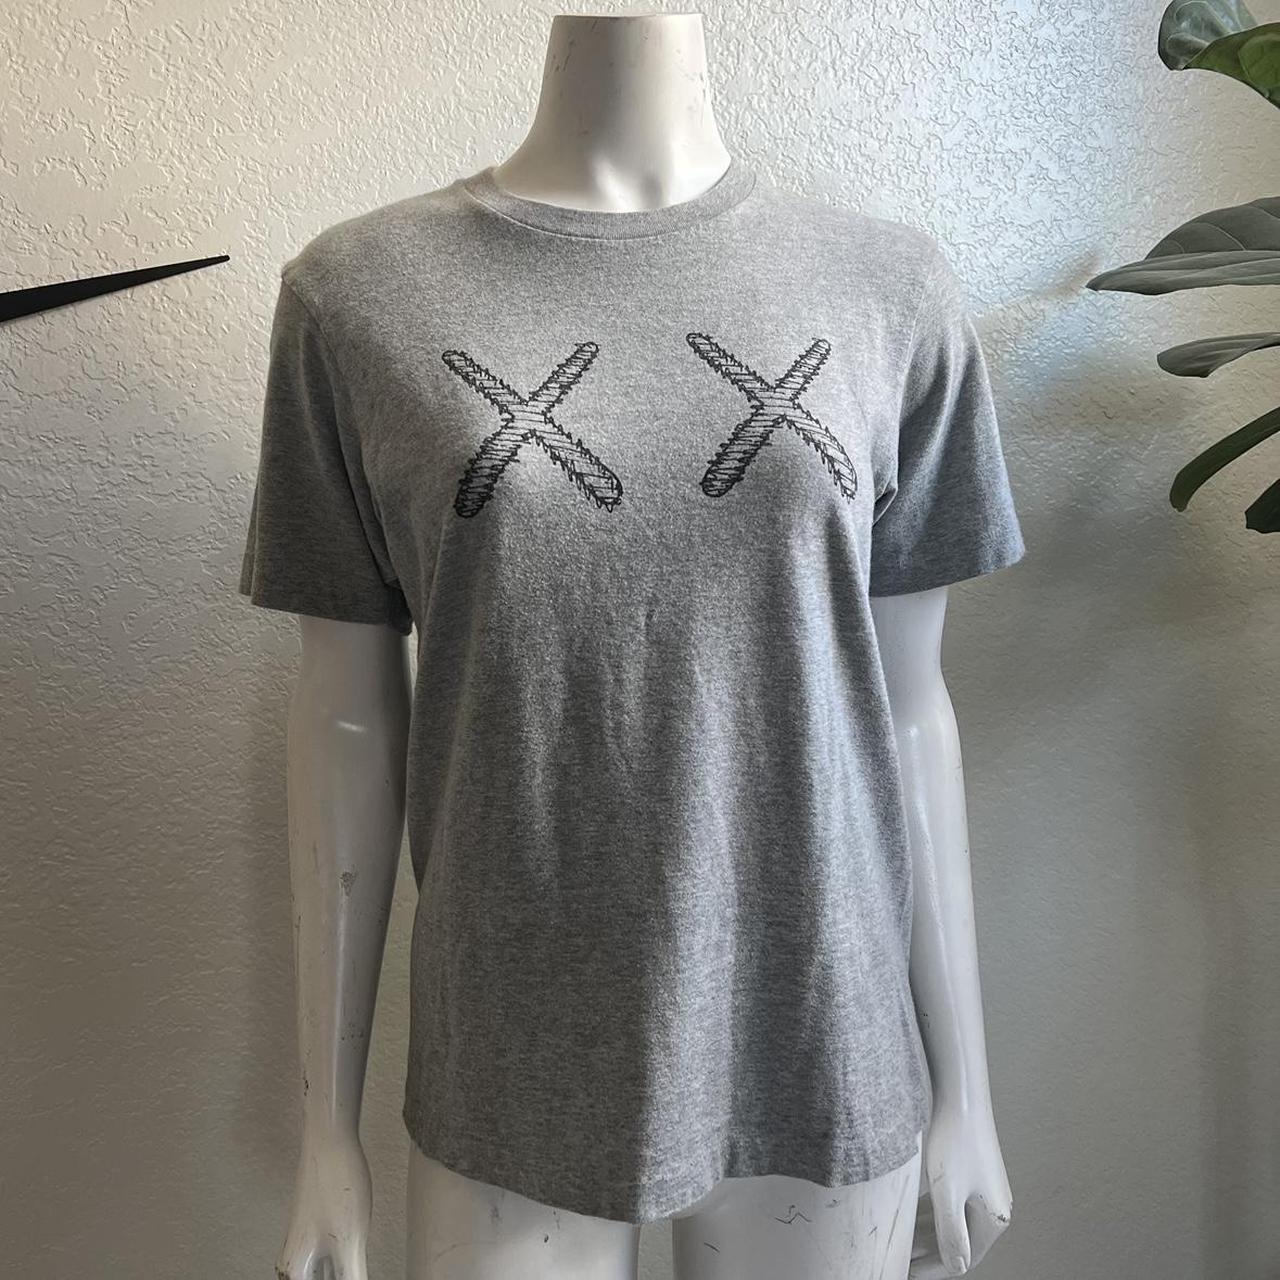 Kaws Women's Grey T-shirt